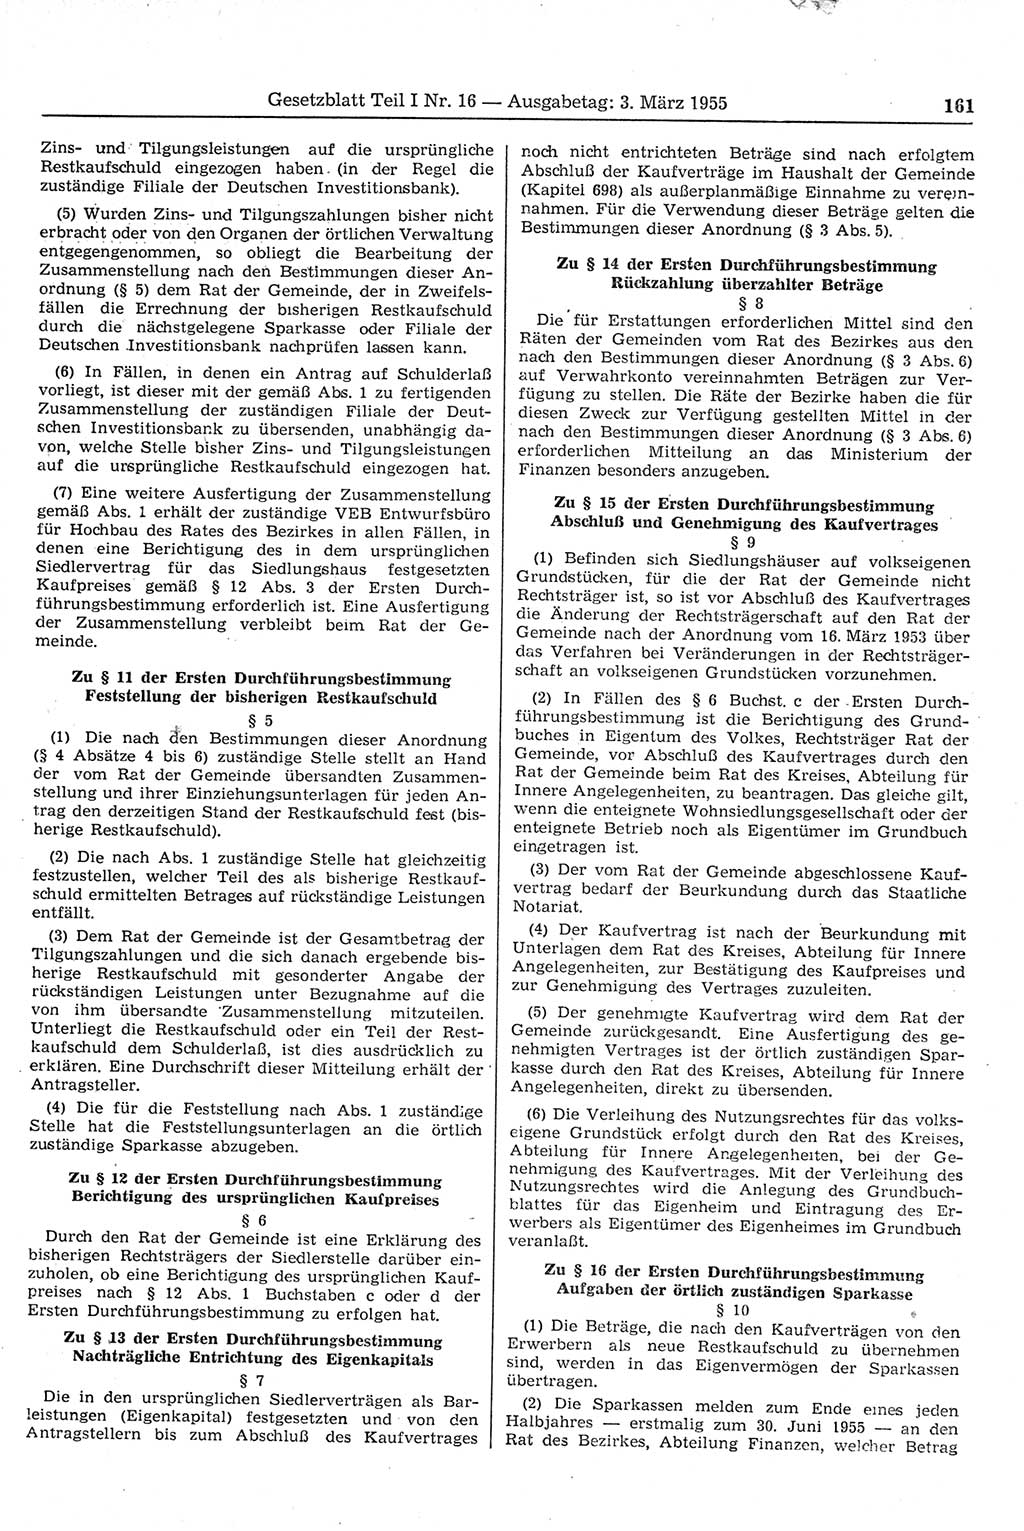 Gesetzblatt (GBl.) der Deutschen Demokratischen Republik (DDR) Teil Ⅰ 1955, Seite 161 (GBl. DDR Ⅰ 1955, S. 161)